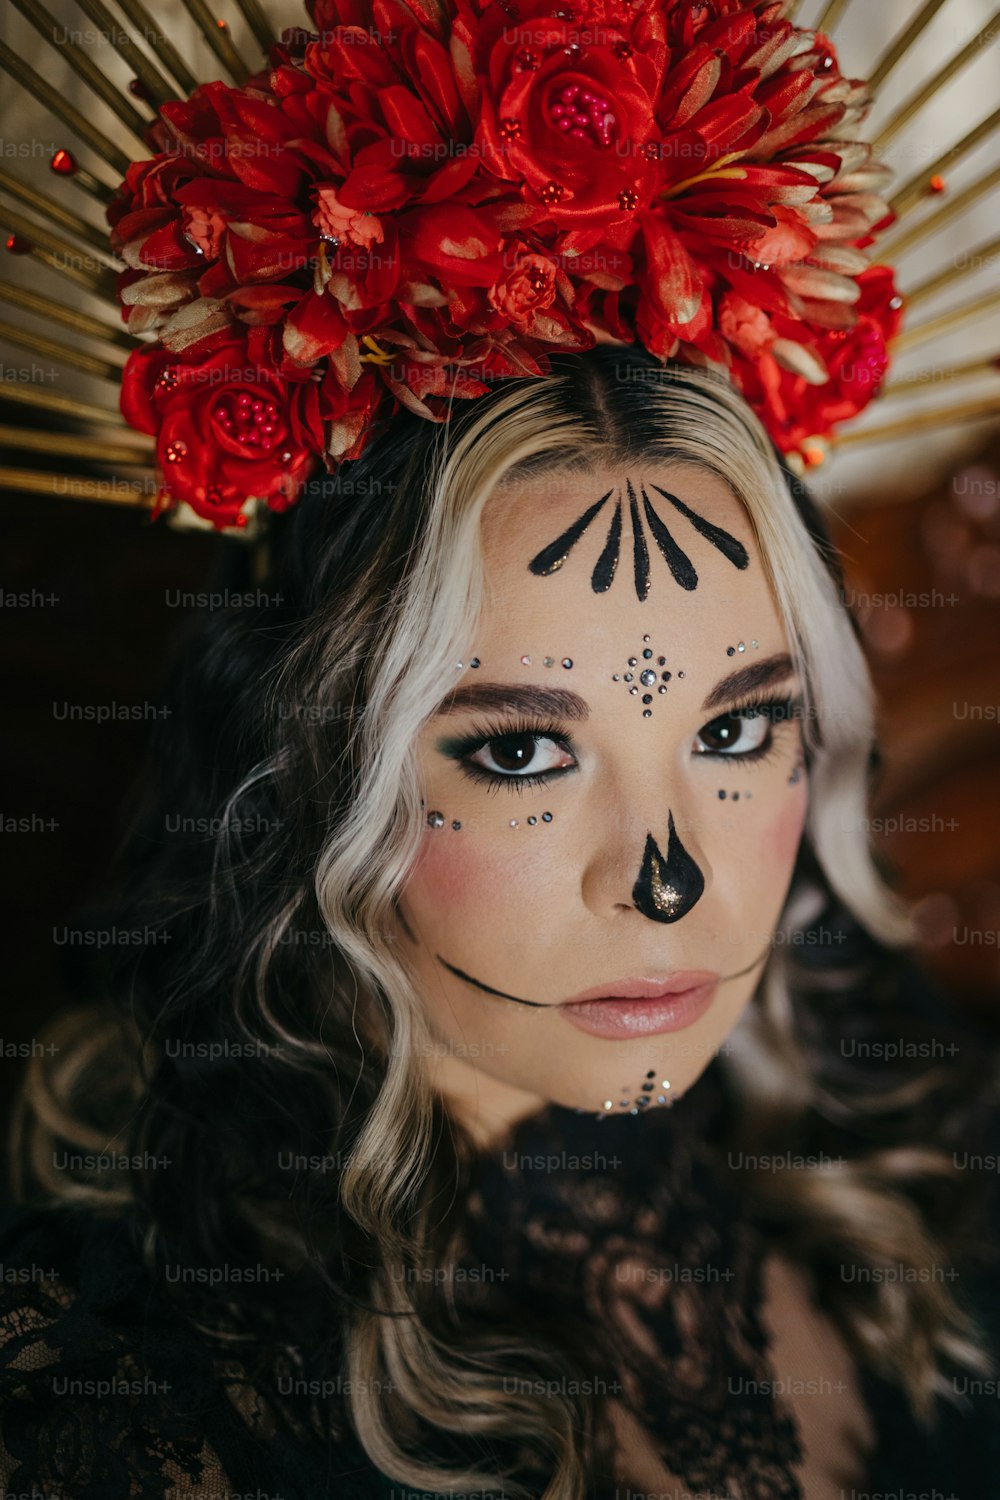 Une femme avec une peinture faciale noire et blanche et des fleurs rouges sur la tête